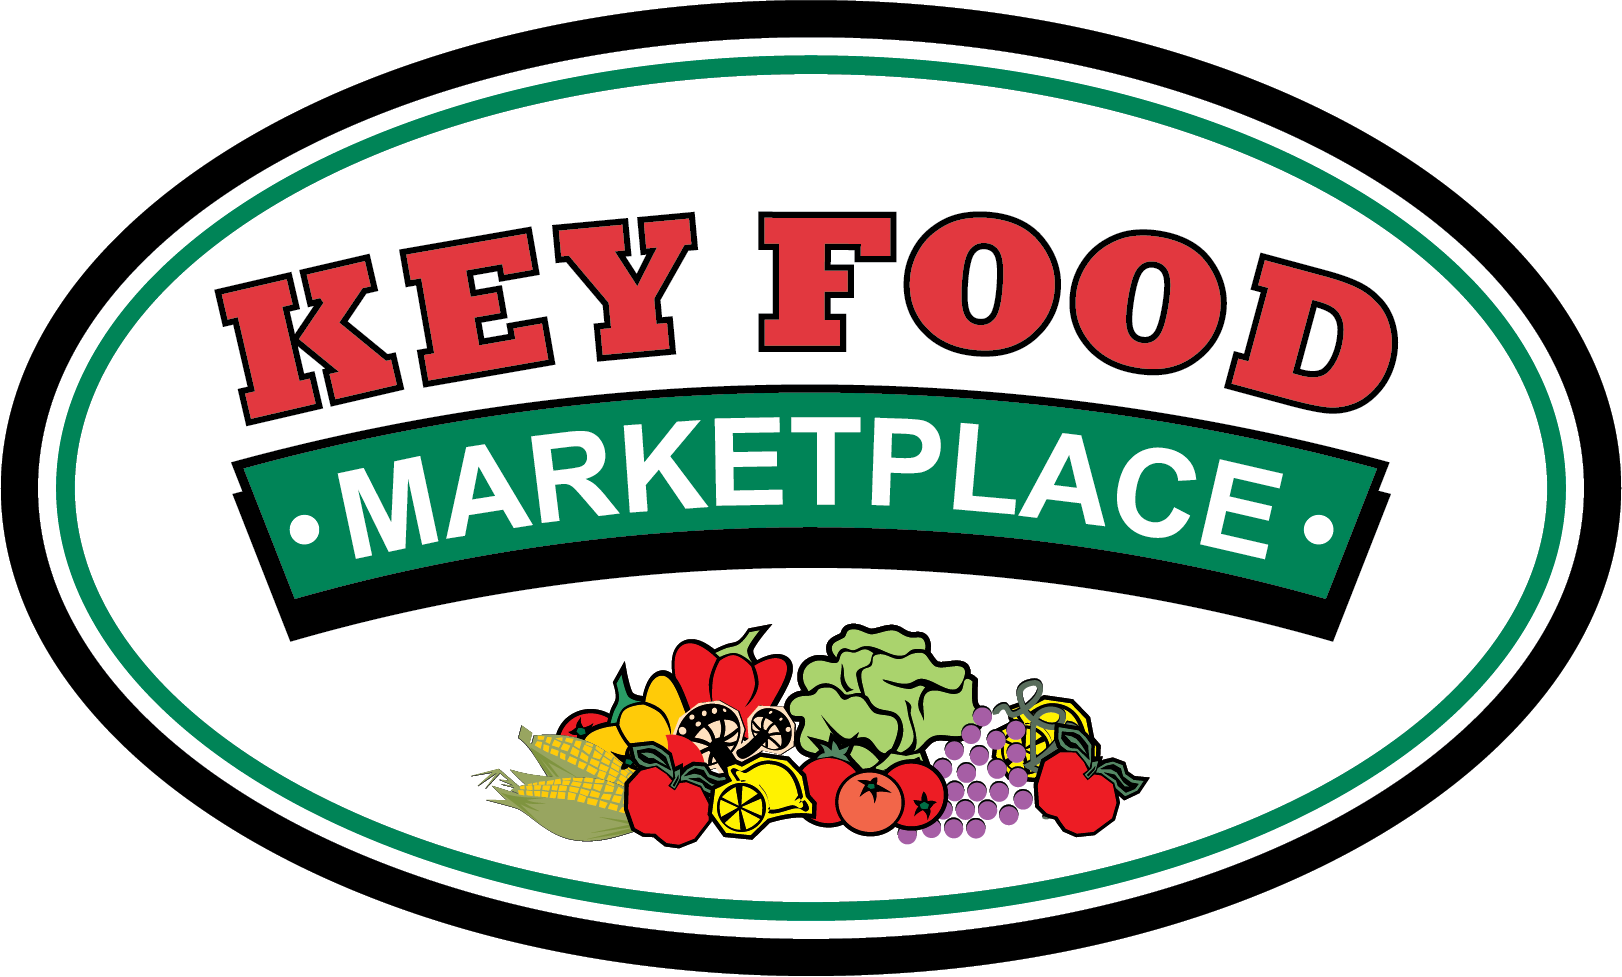 Key Food Marketplace - Key Food Marketplace Logo (1622x977)